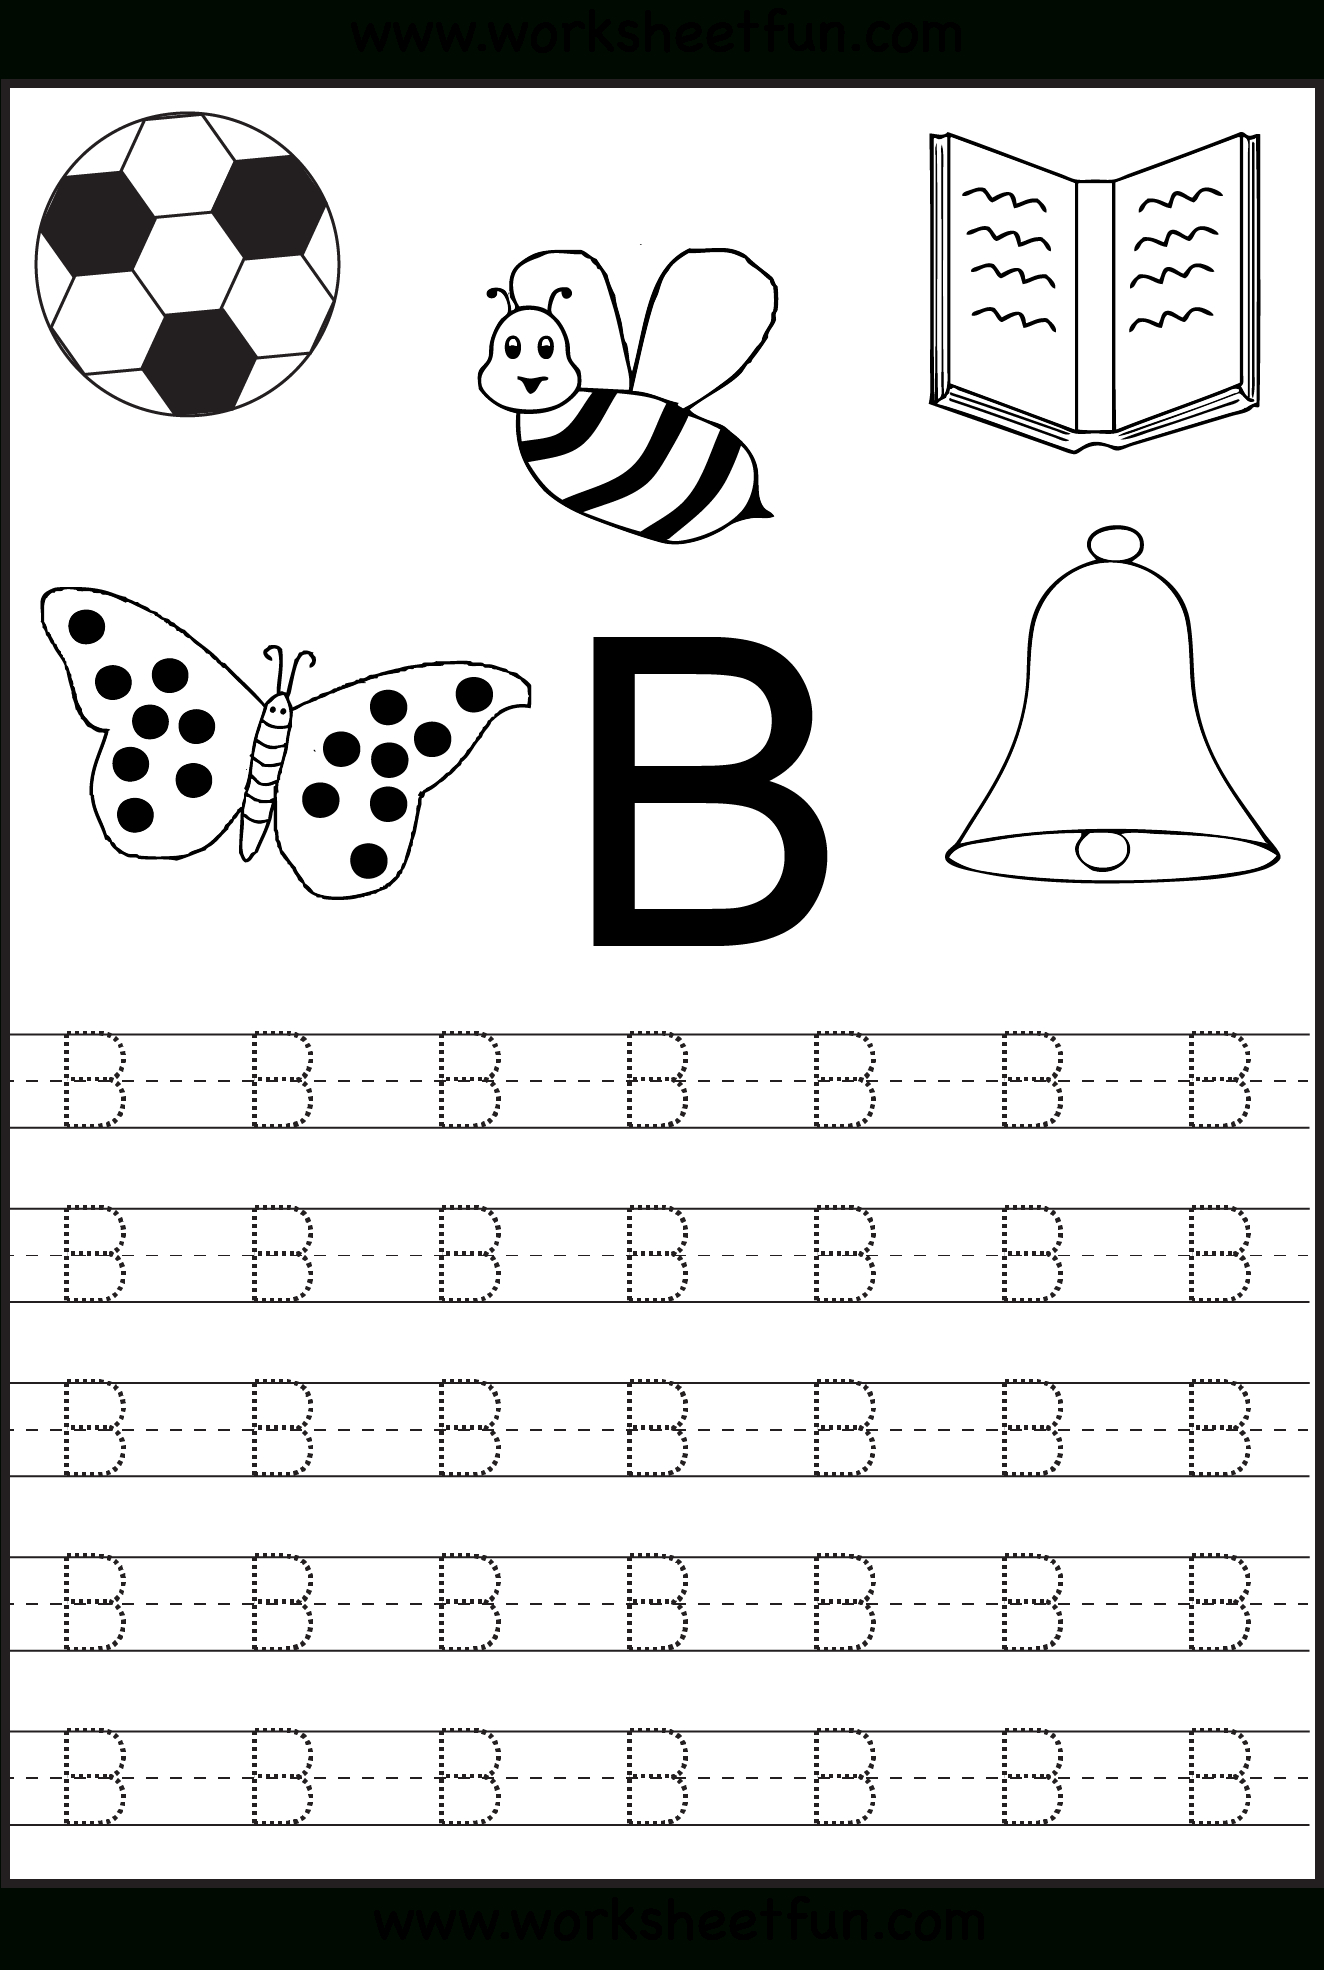 Kindergarten Alphabet Worksheets Printable Preschool Worksheets 7 Best Images Of Preschool 